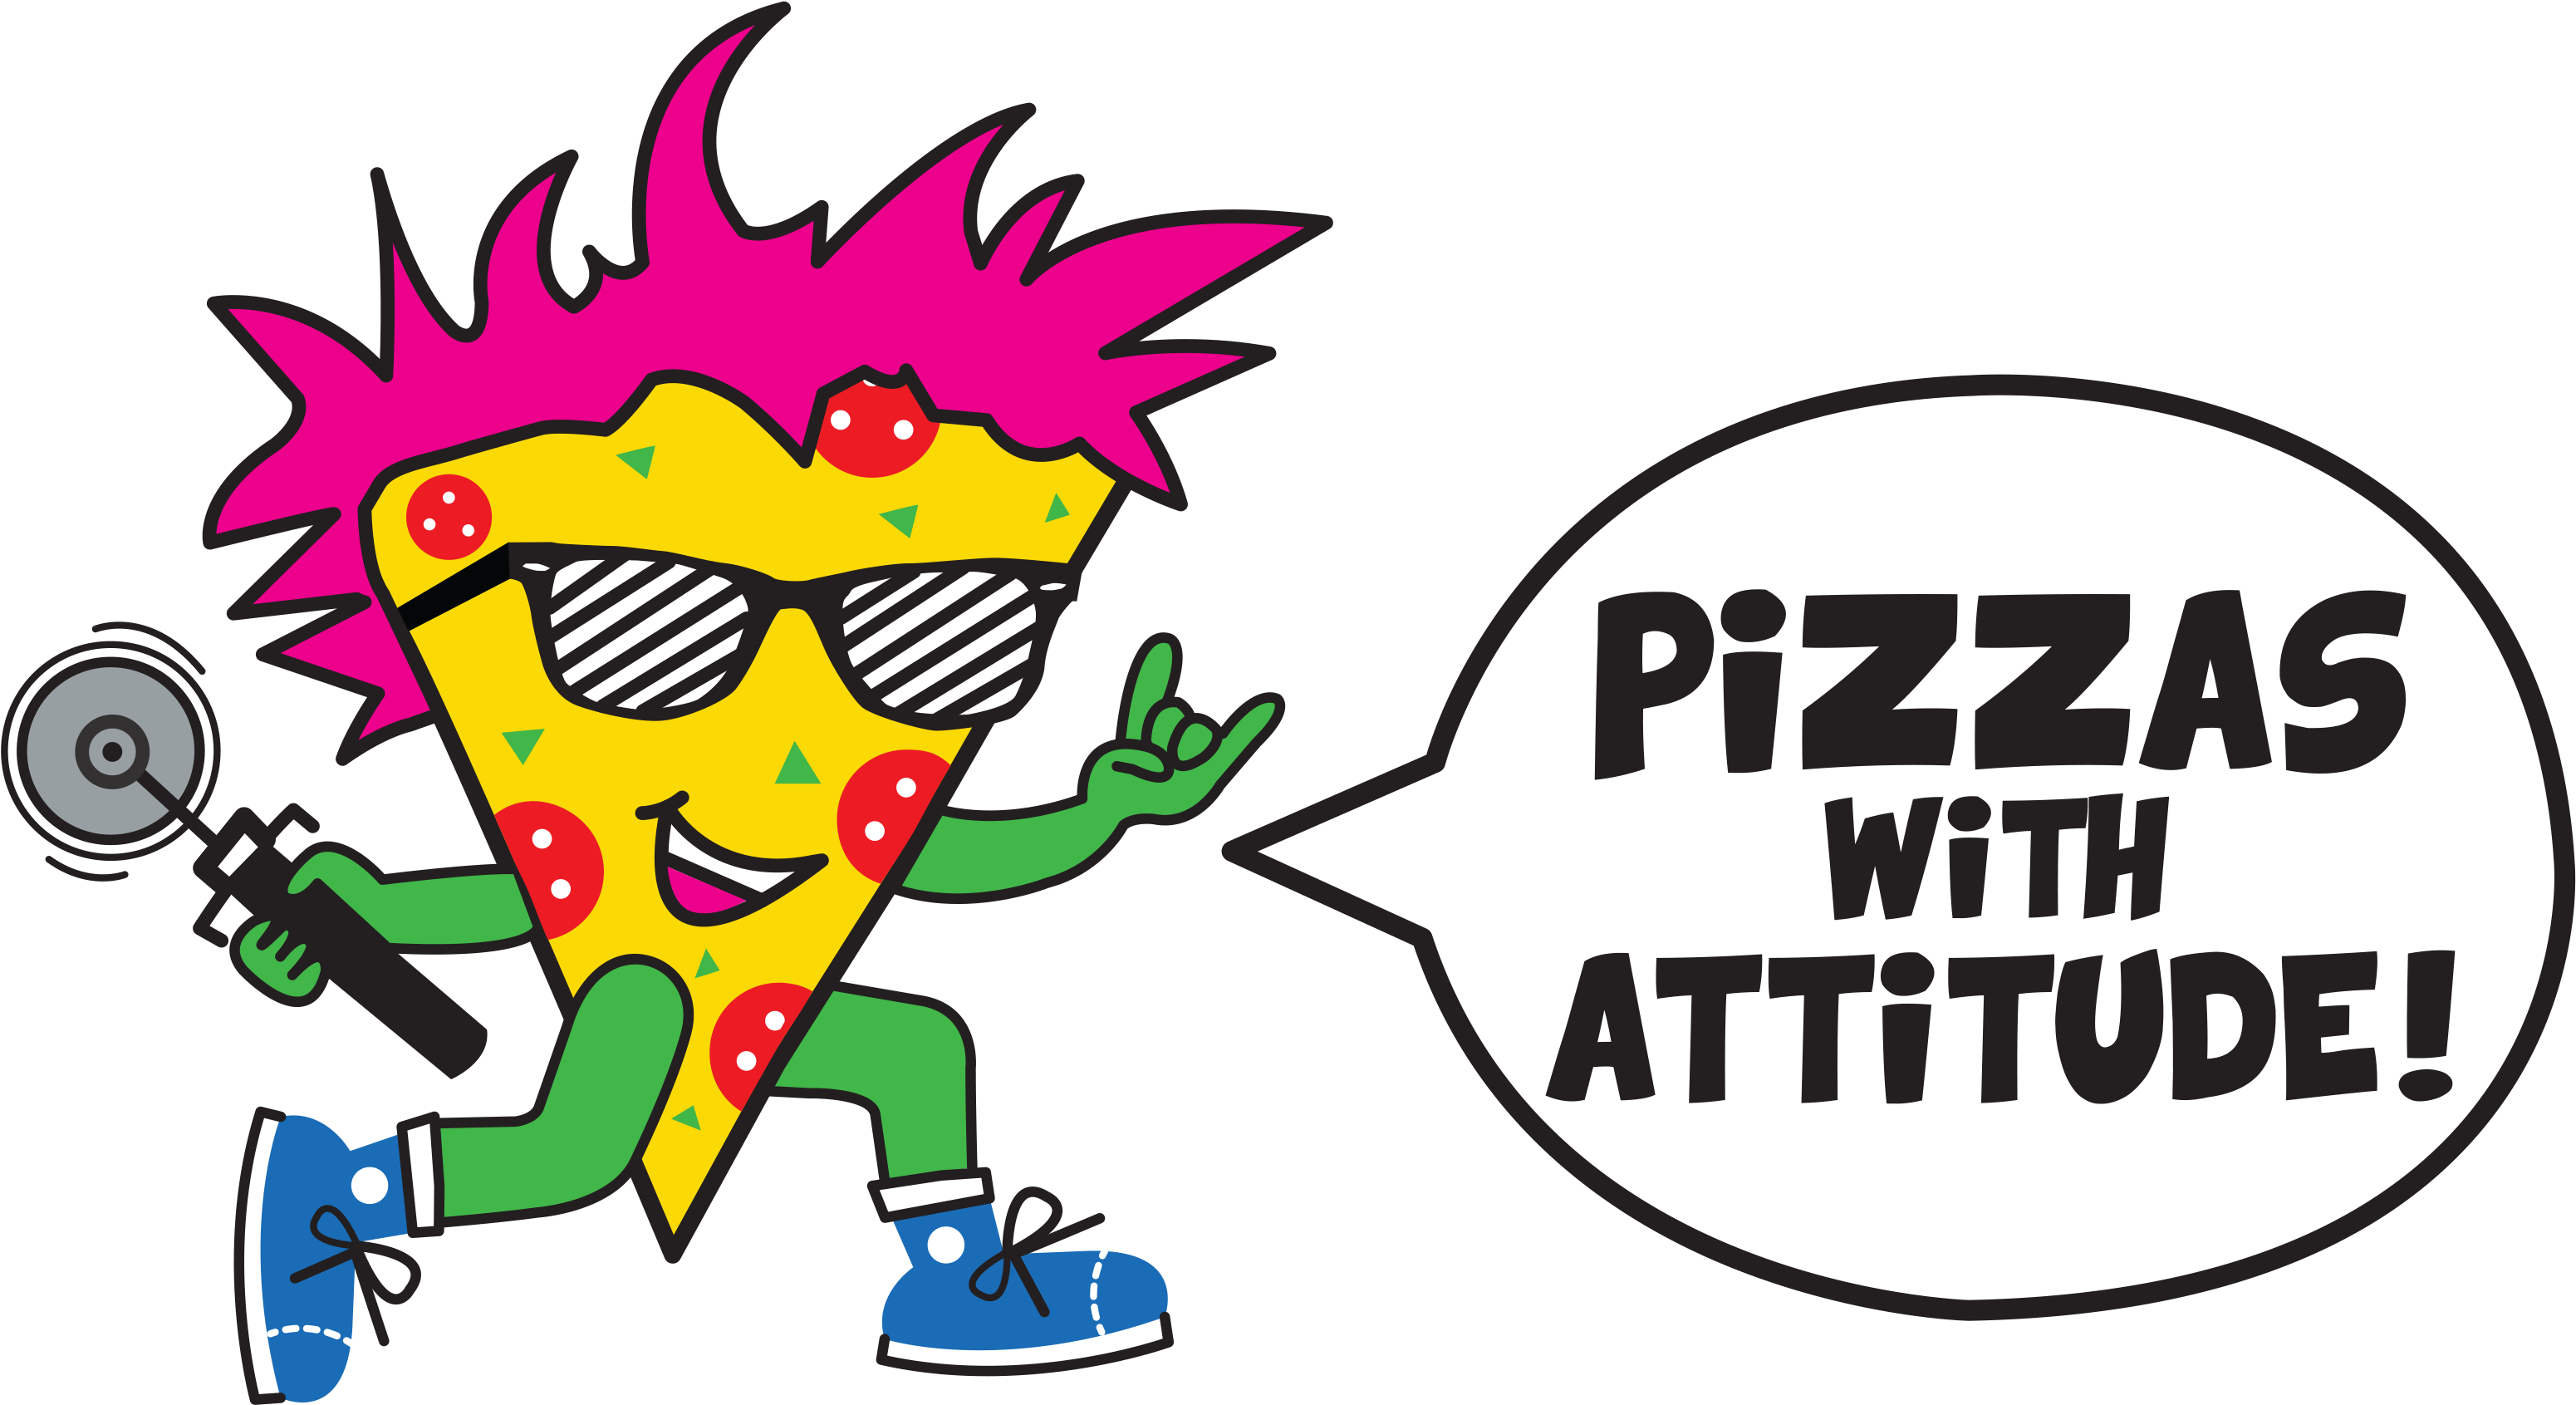 Pizzas With Attitude Leopold - Pizzas With Attitude Logo (3148x1721)